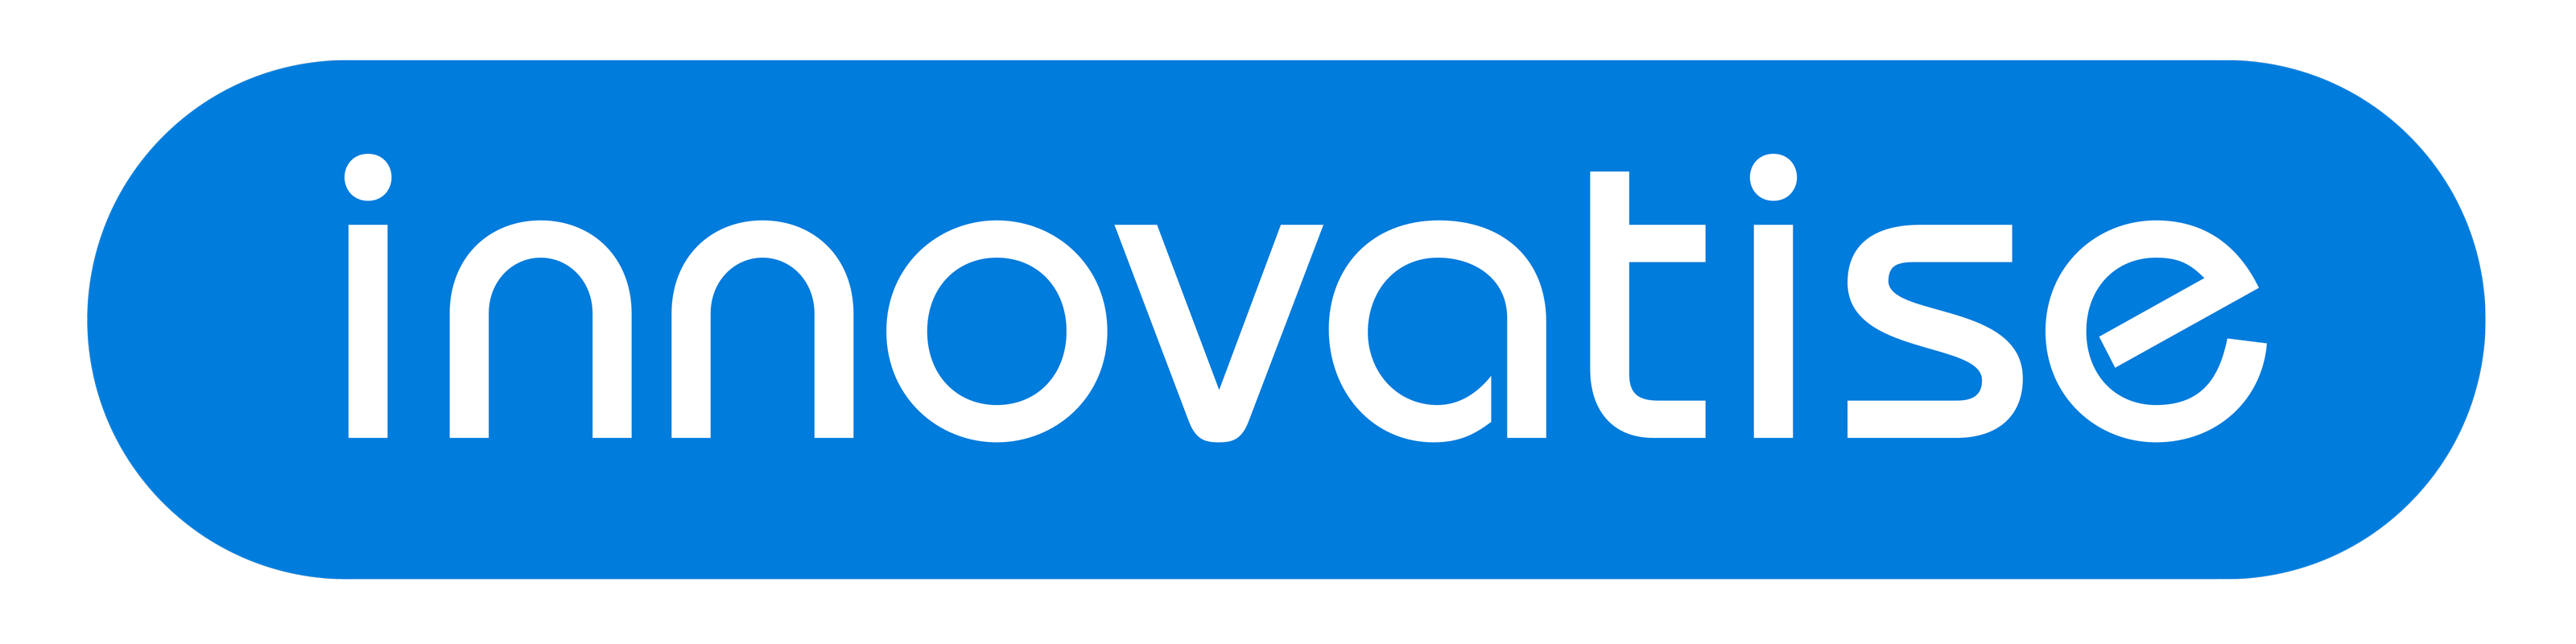 Blaues Logo von innovatise dem Unternehmen hinter myFitApp